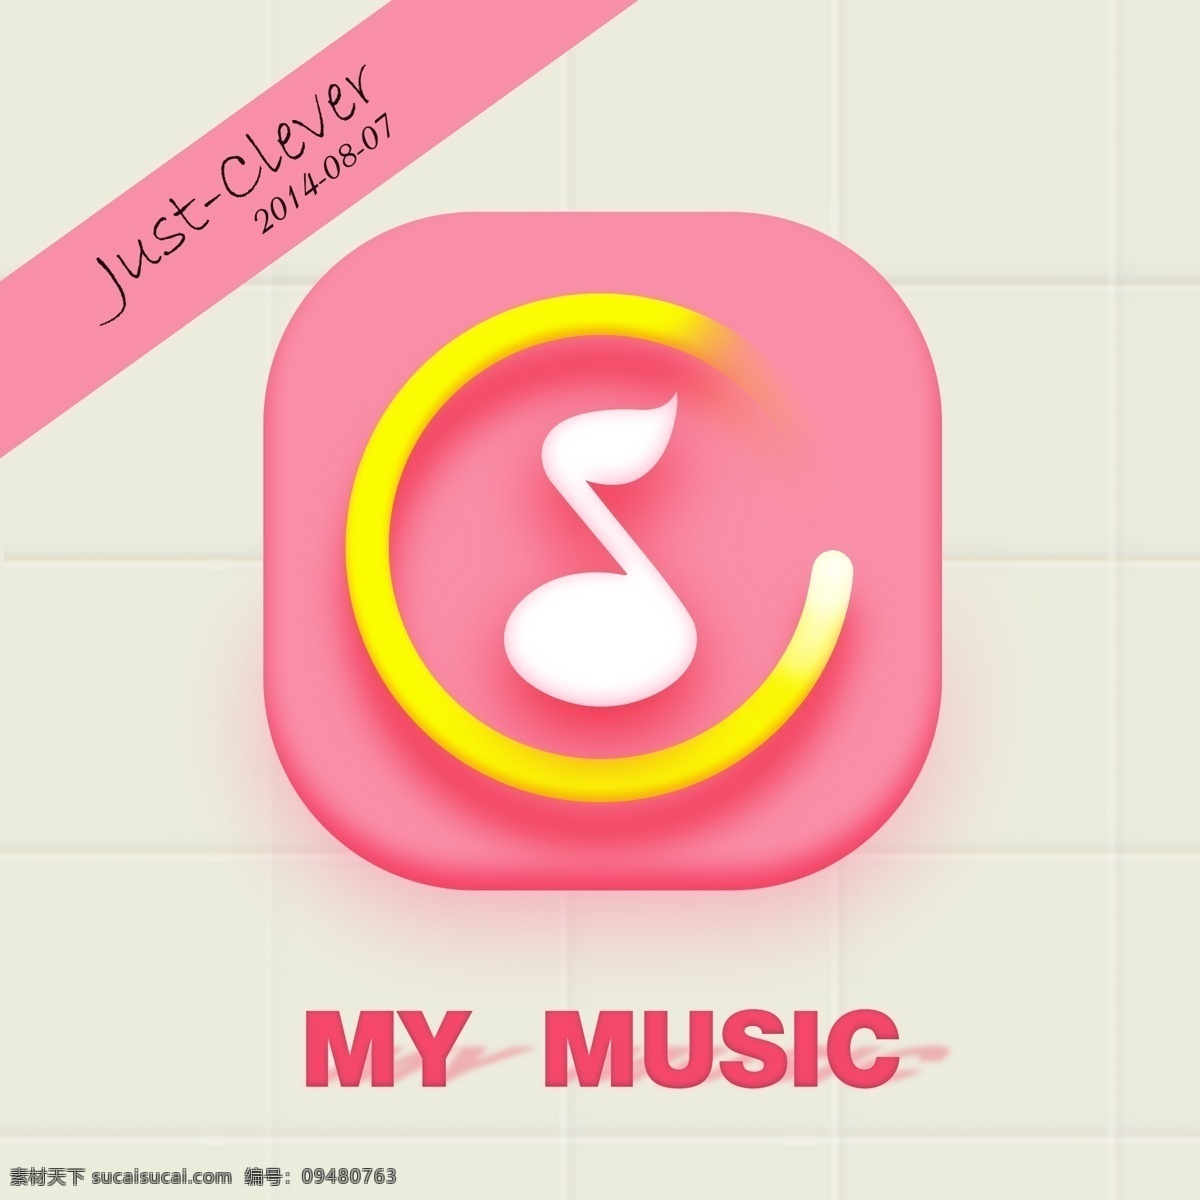 音乐图标 手机图标 应用程序图标 音乐 music icon 分层